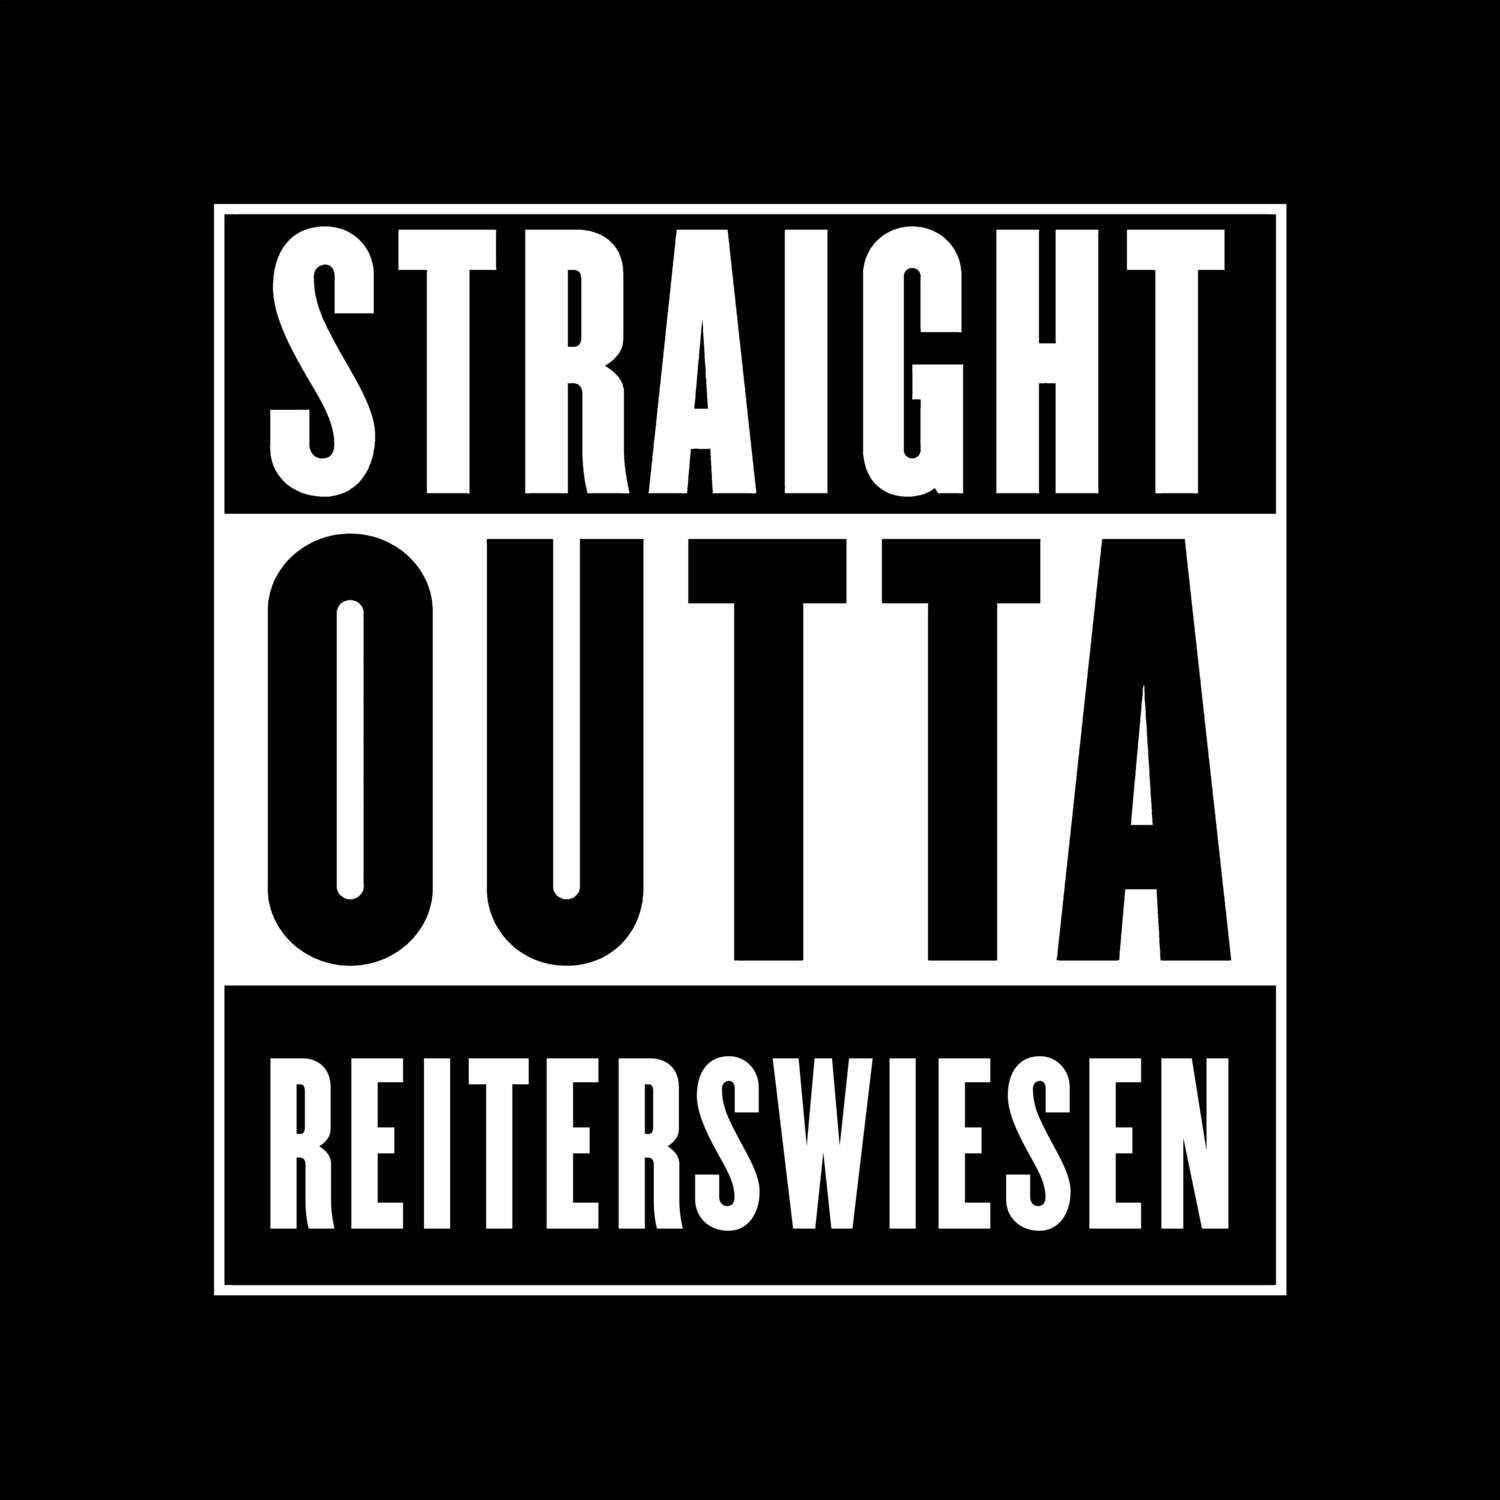 Reiterswiesen T-Shirt »Straight Outta«